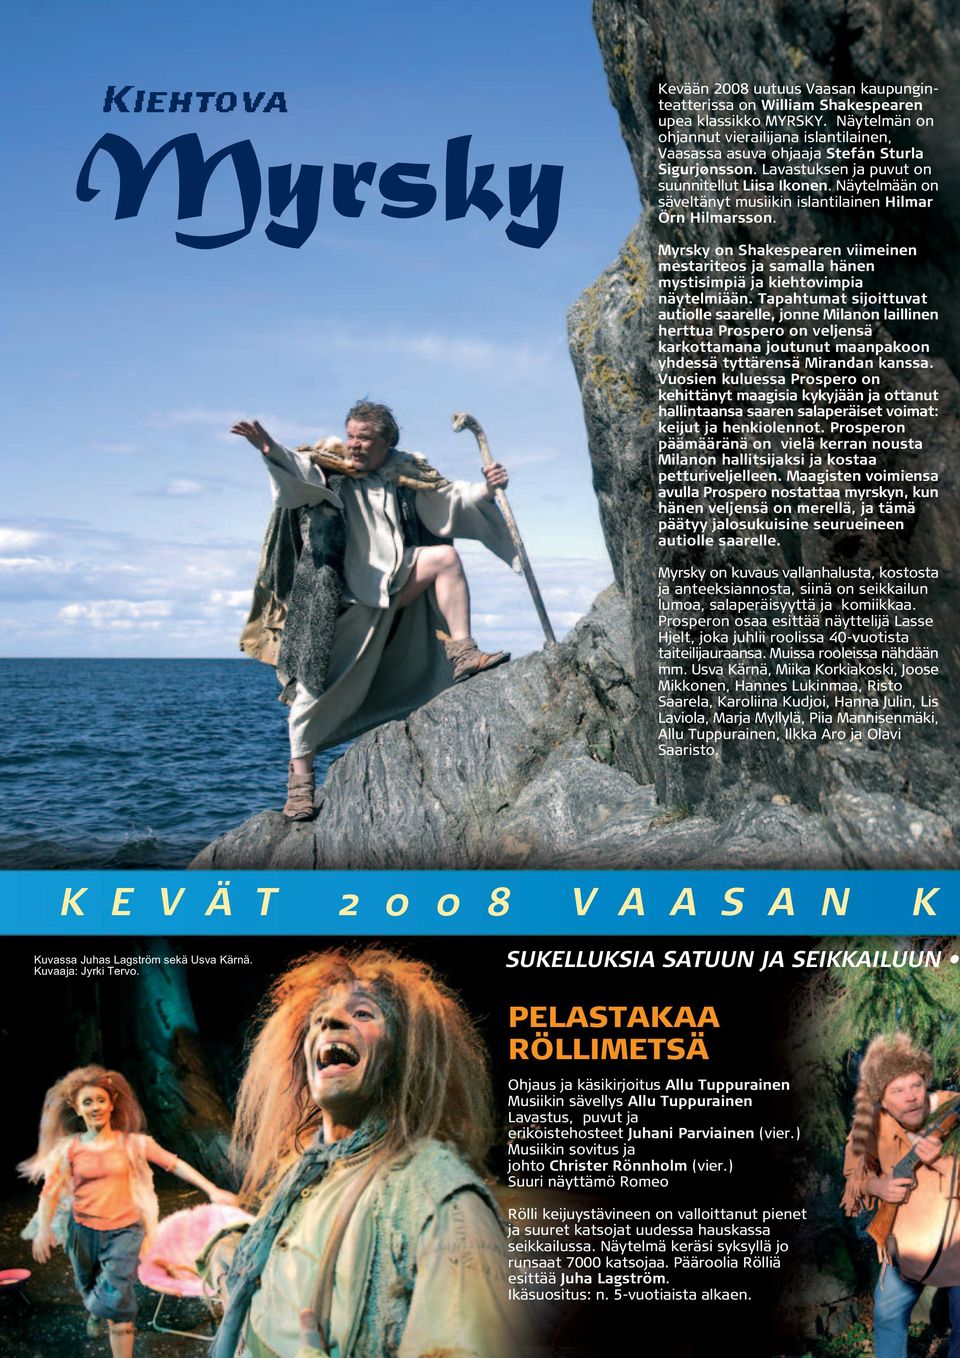 Näytelmään on säveltänyt musiikin islantilainen Hilmar Örn Hilmarsson. Myrsky on Shakespearen viimeinen mestariteos ja samalla hänen mystisimpiä ja kiehtovimpia näytelmiään.